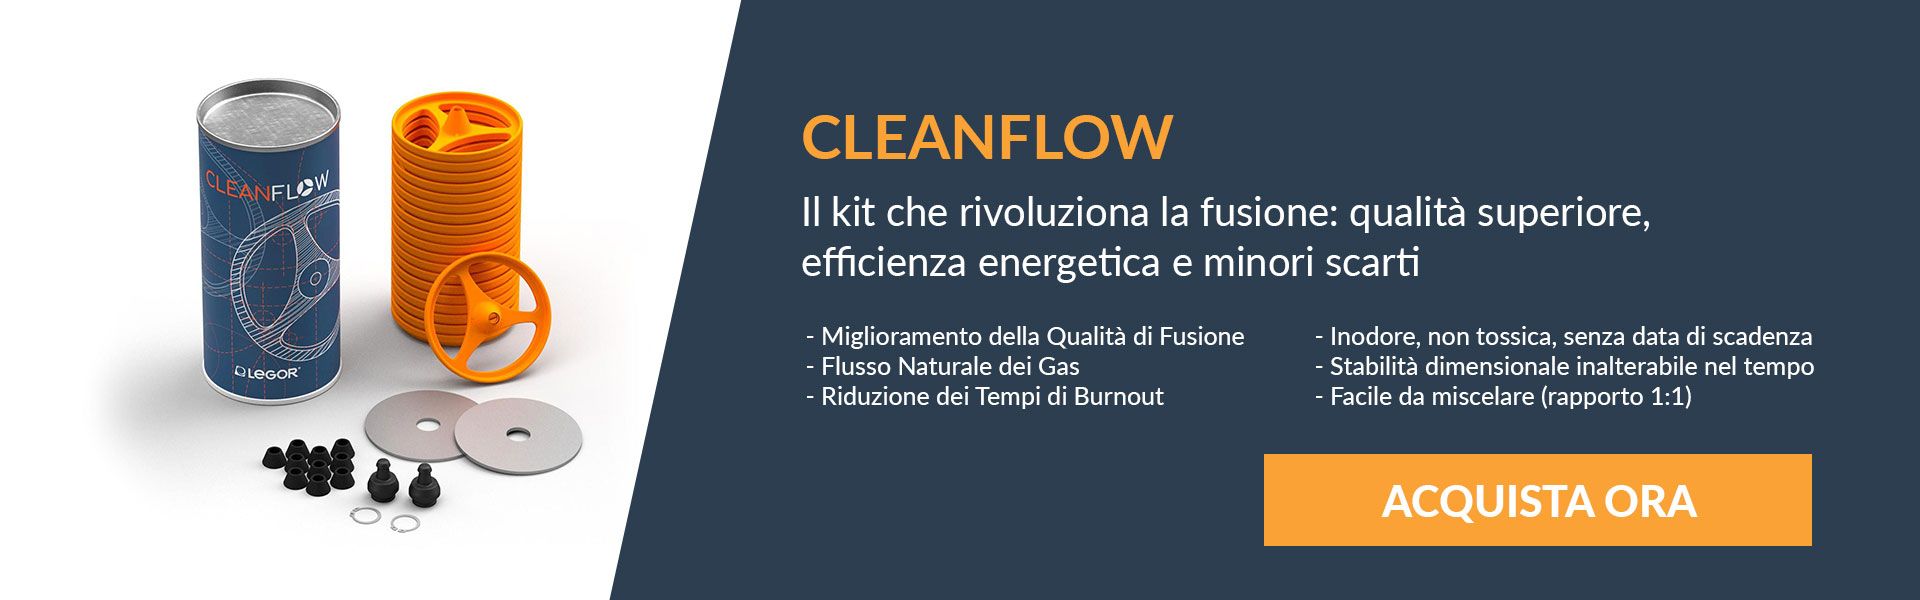 Articoli in promozione Cleanflow